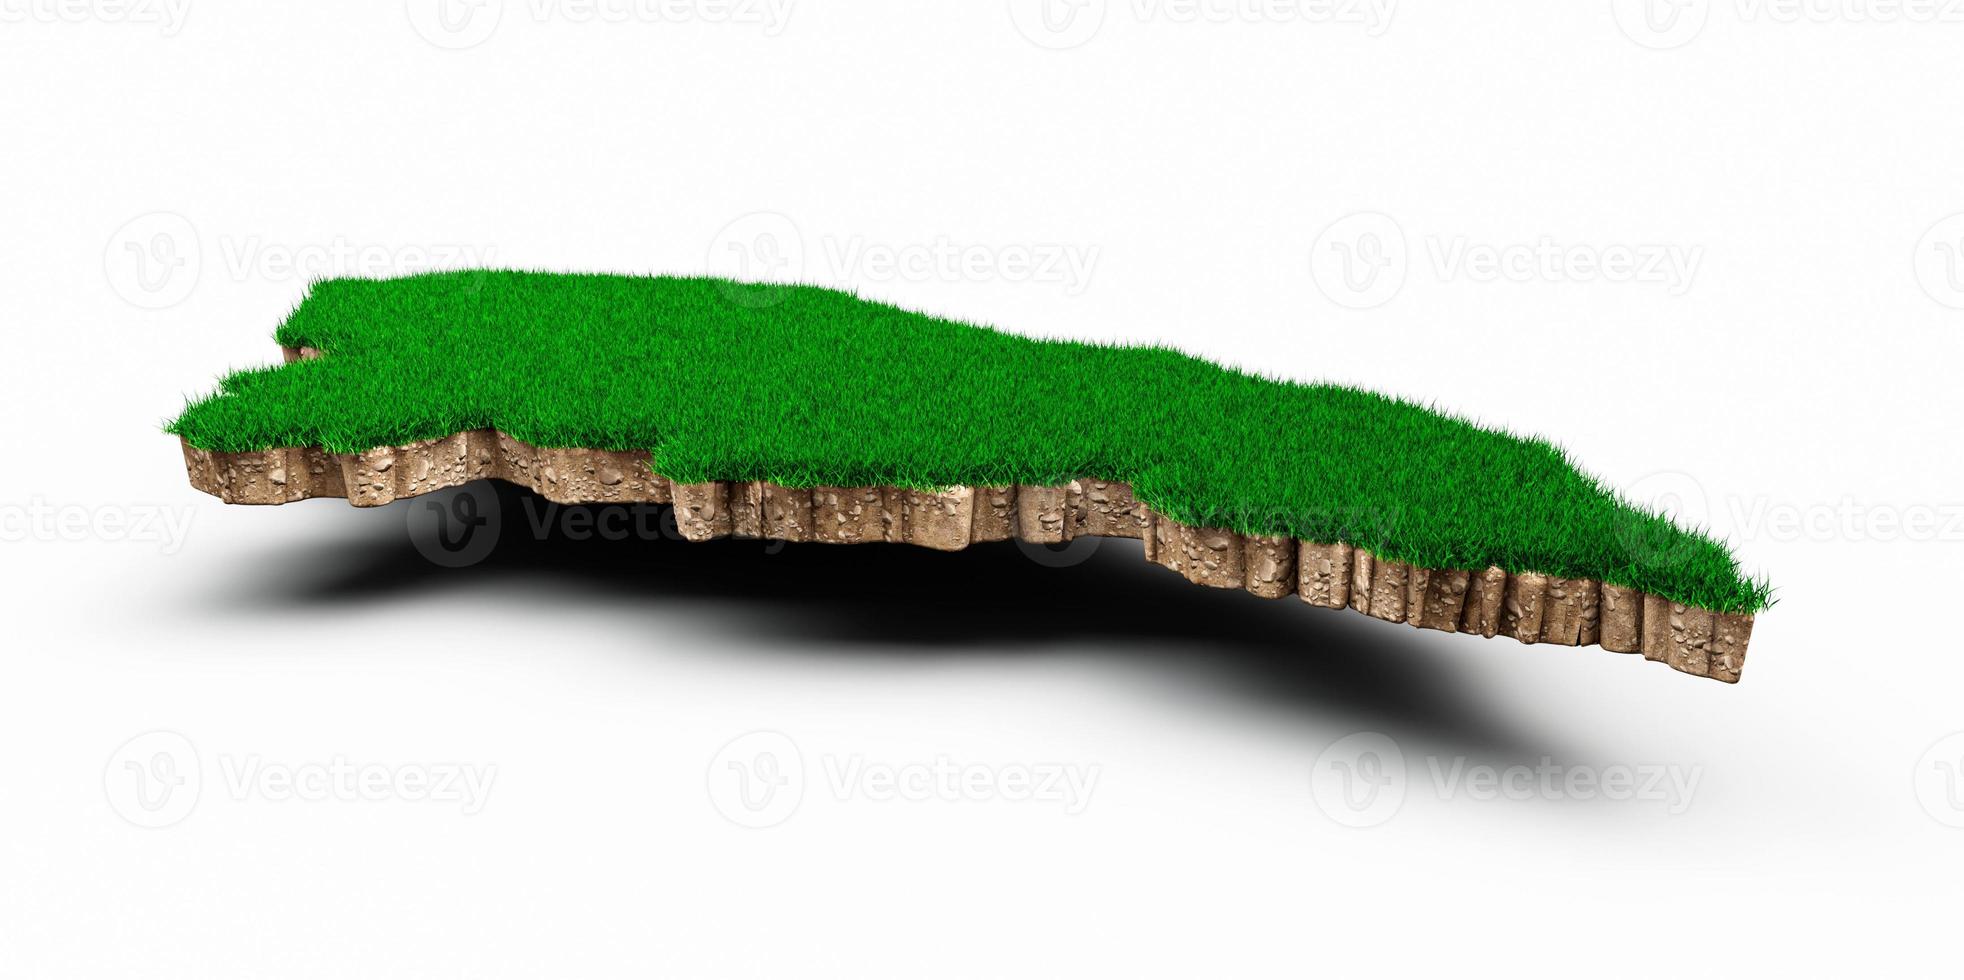 honduras karta jord mark geologi tvärsnitt med grönt gräs och sten marken textur 3d illustration foto